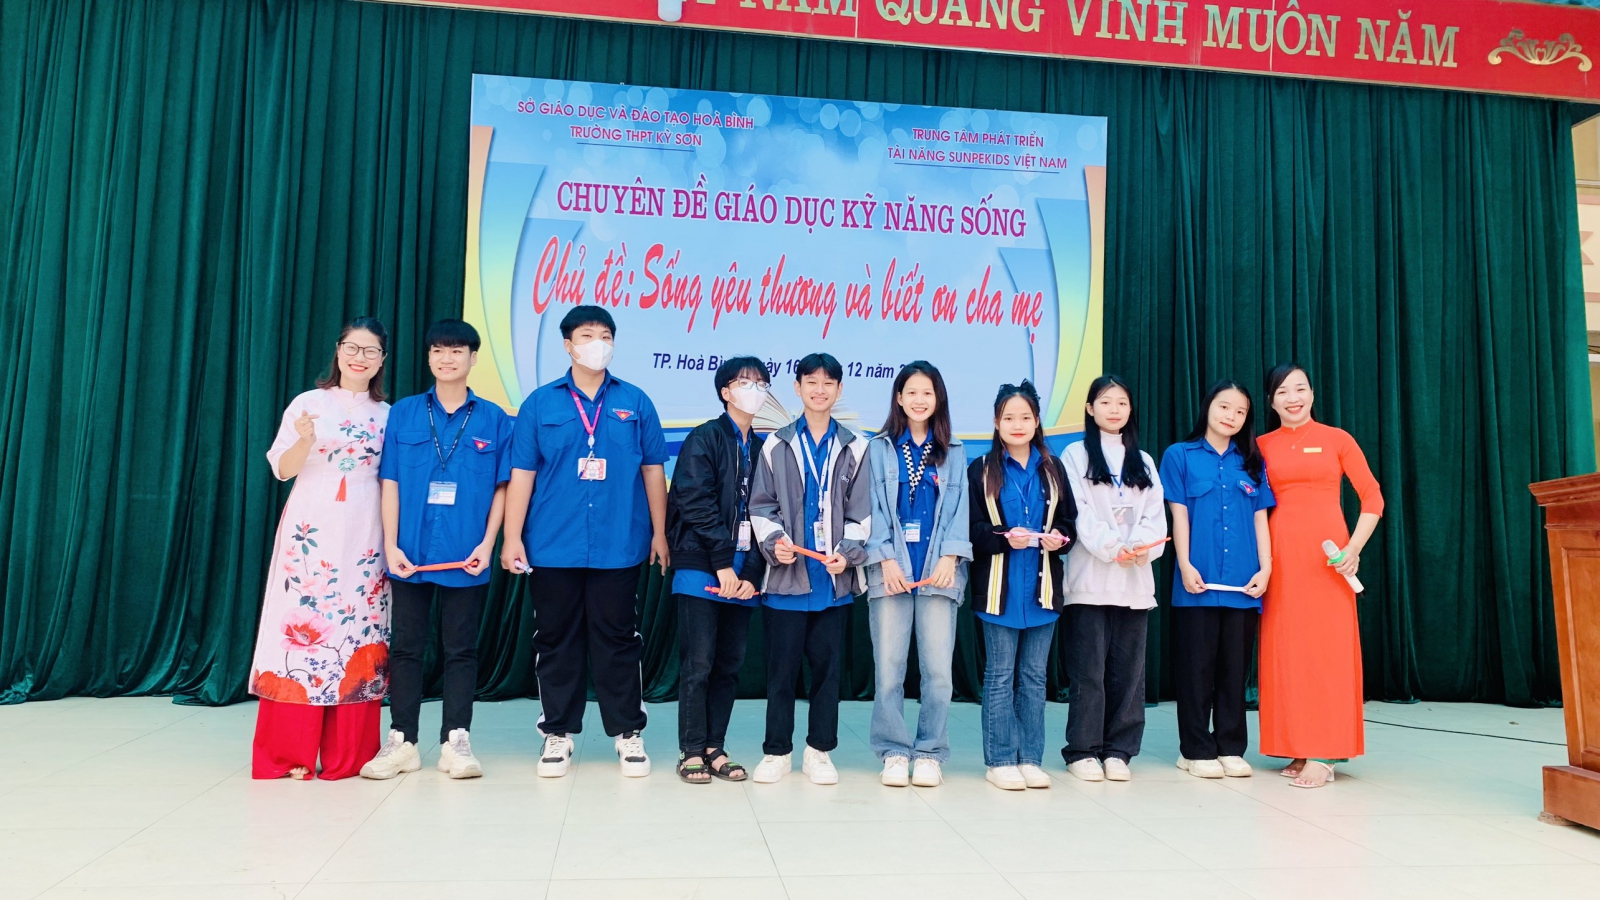 Sáng thứ 7 ngày 16 tháng 12, trường THPT Kỳ Sơn kết hợp với trung tâm giáo dục kĩ năng sống Superkids tổ chức chuyên đề " Sống yêu thương và biết ơn cha mẹ".